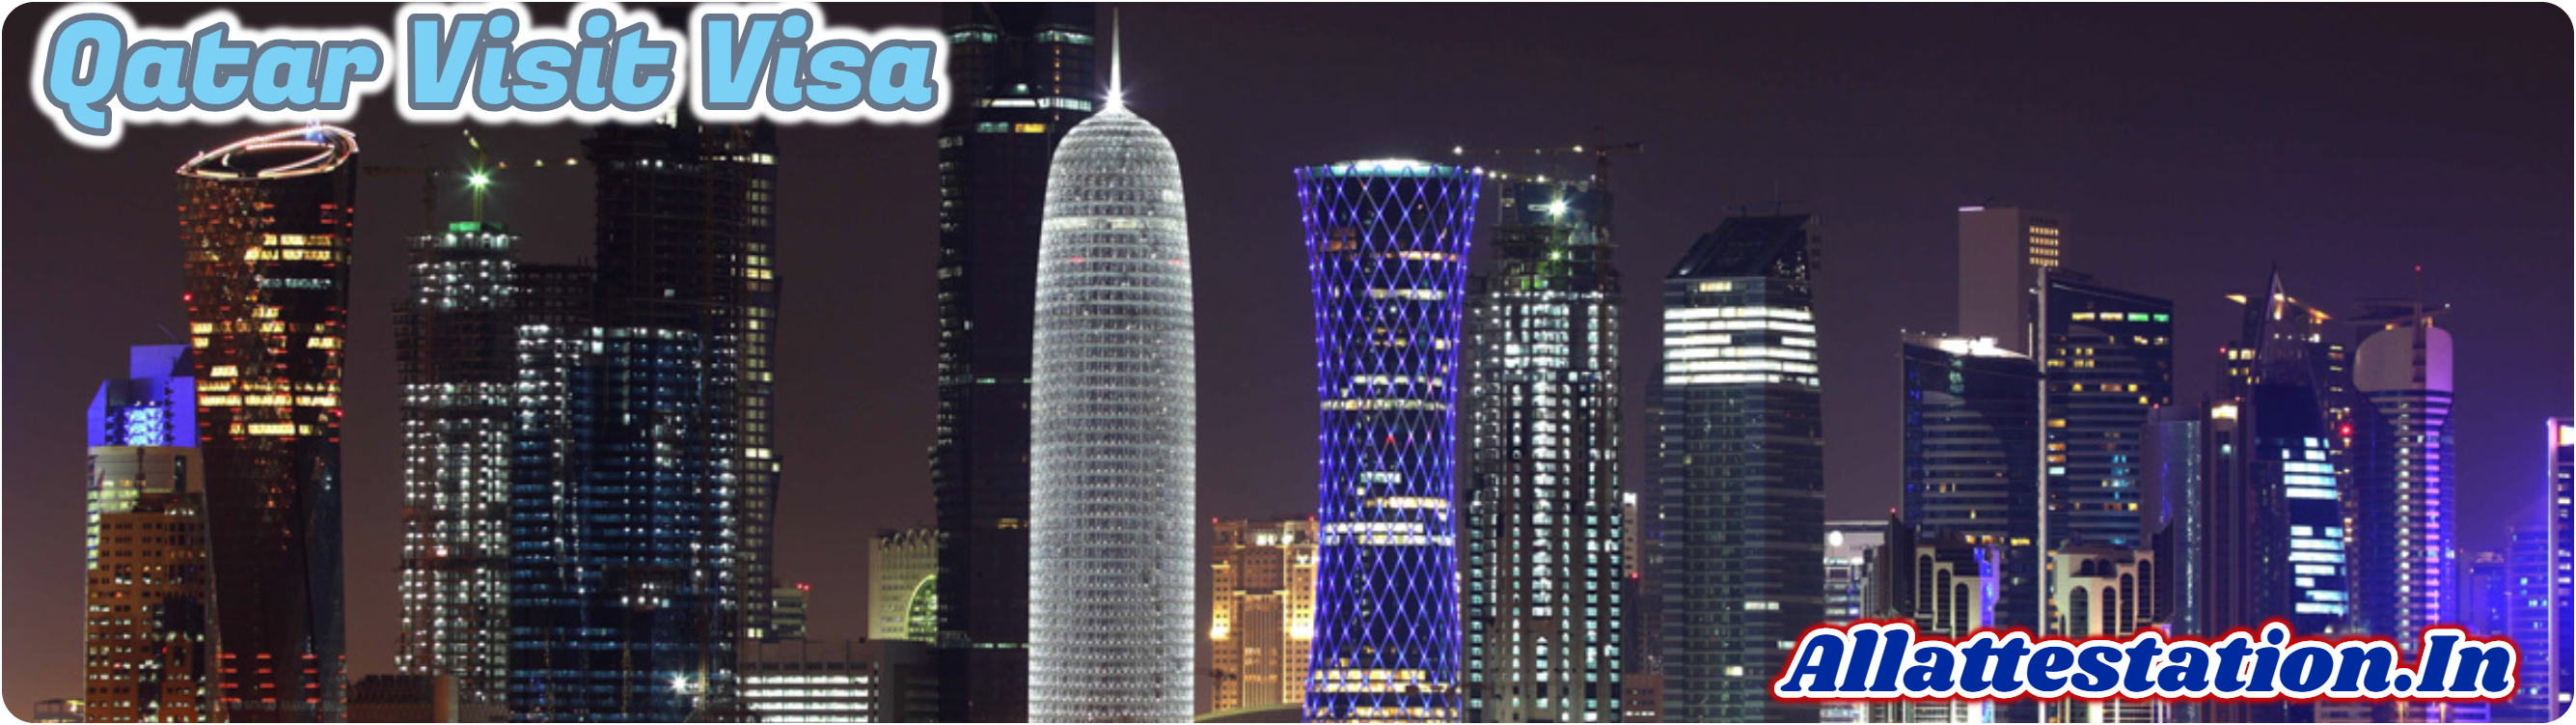 Qatar-Visit-Visa.html